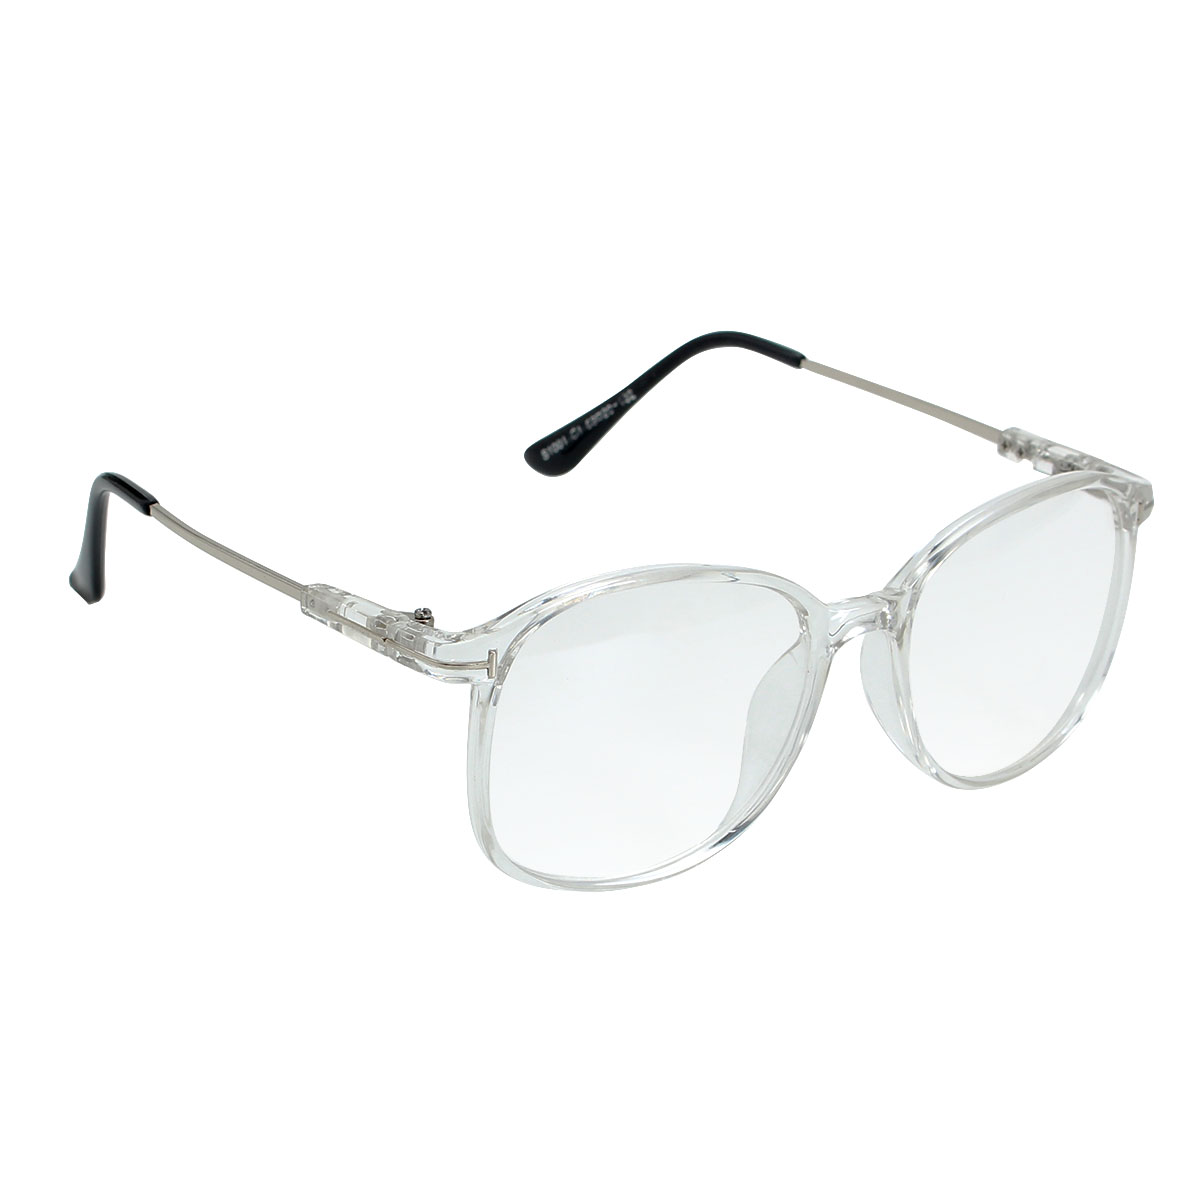 

Women Transparent Eyeglass Men Frame Full Rim Spectacles Clear Lens Glasses Eyewear